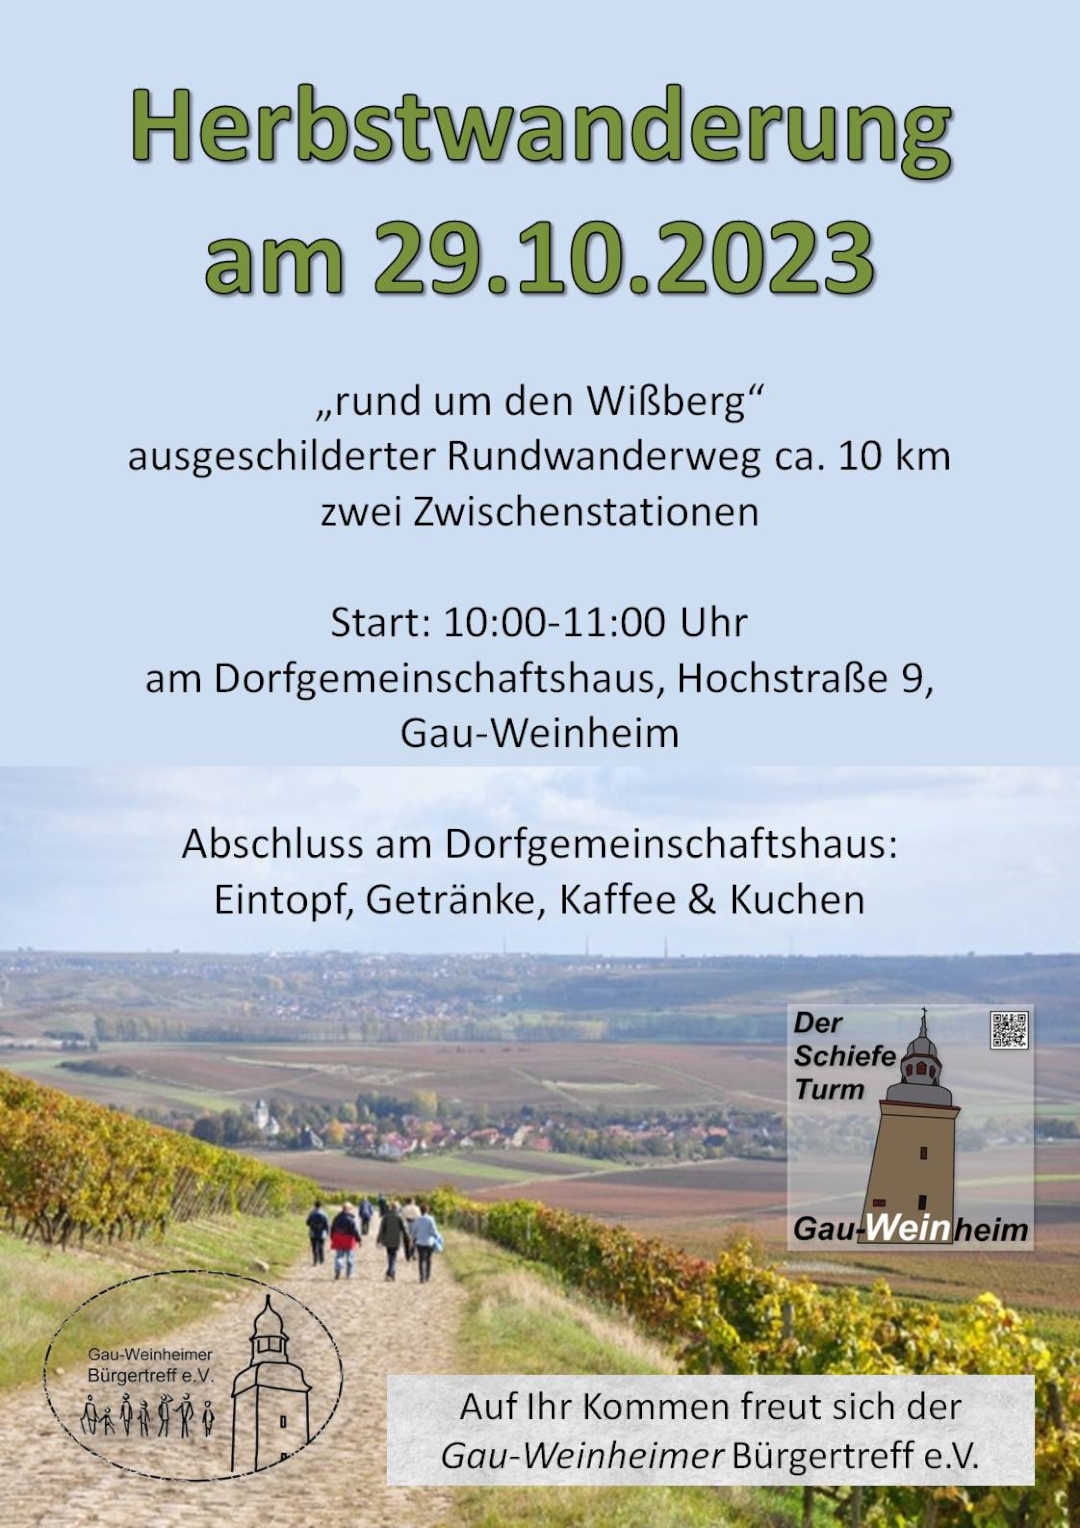 Herbstwanderung 2023 - Gau-Weinheimer Bürgertreff e.V.